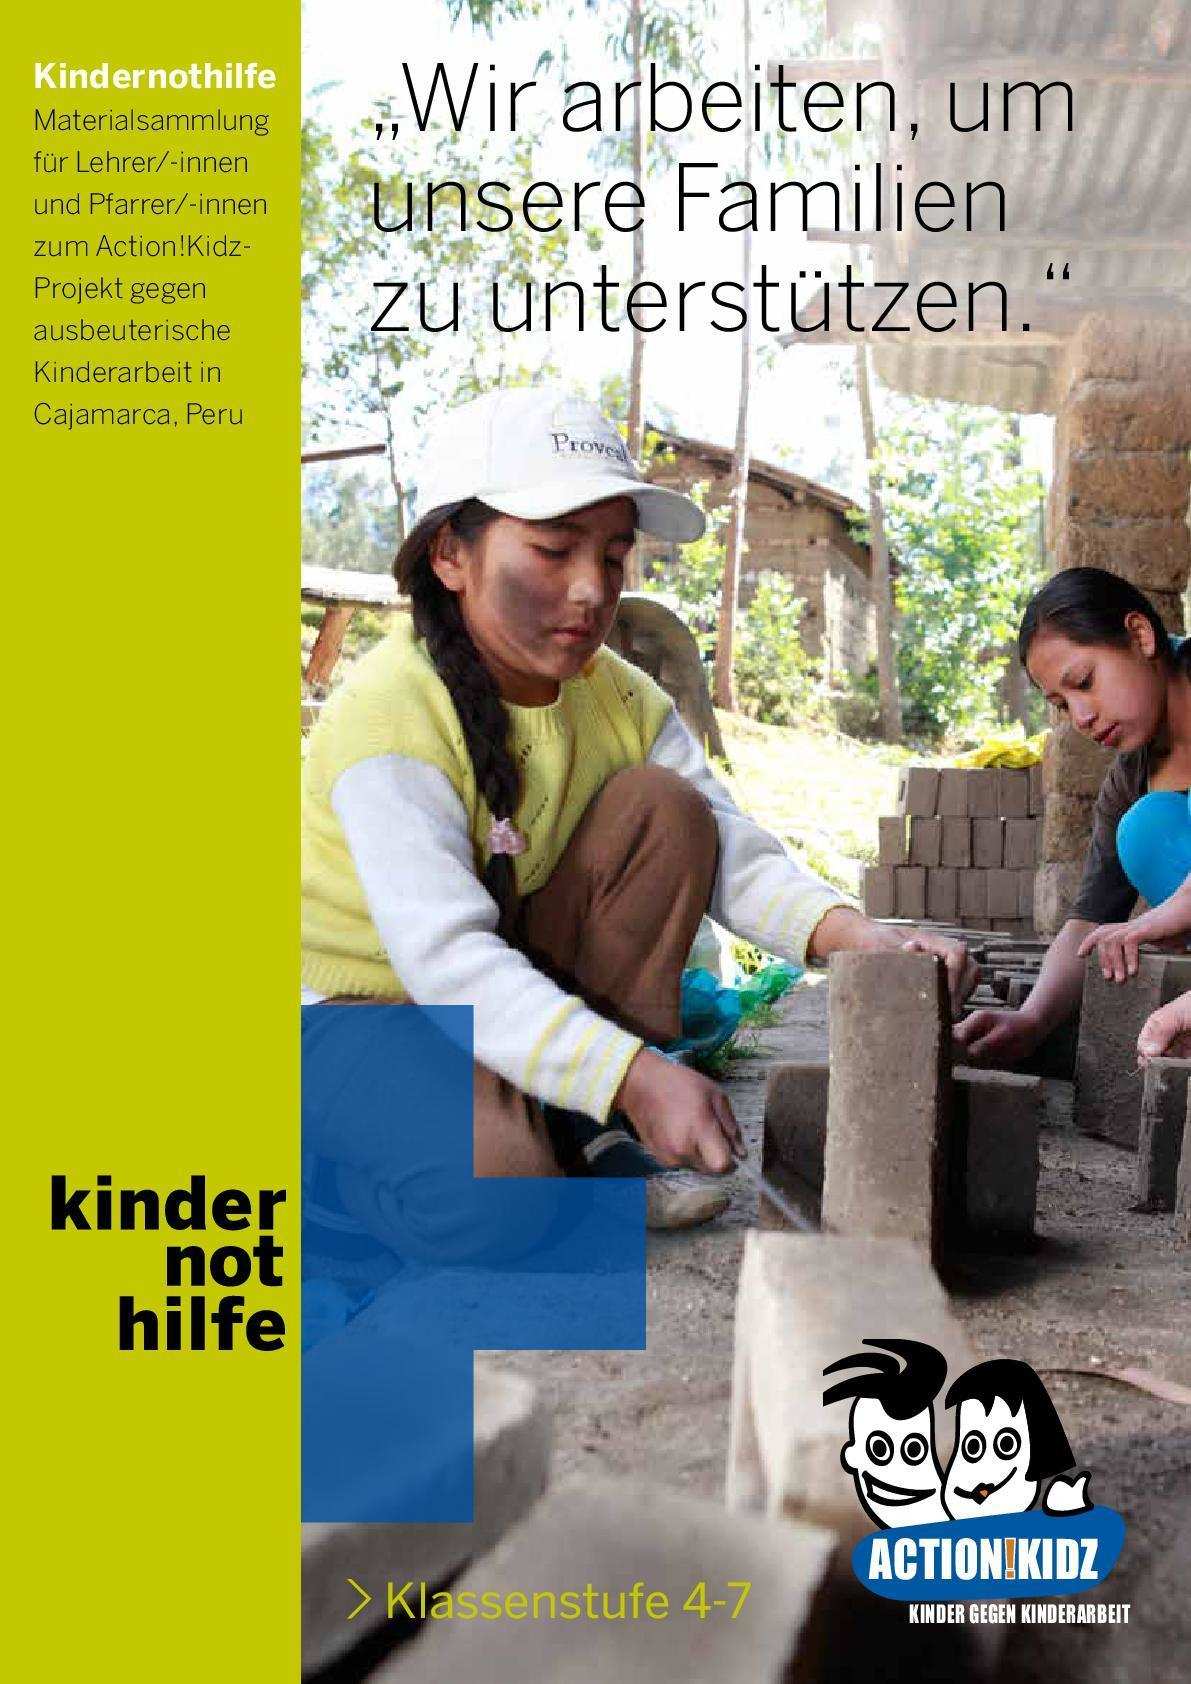 Titelbild Unterrichtsmaterial Kinderarbeit in Peru (Quelle: Kindernothilfe)